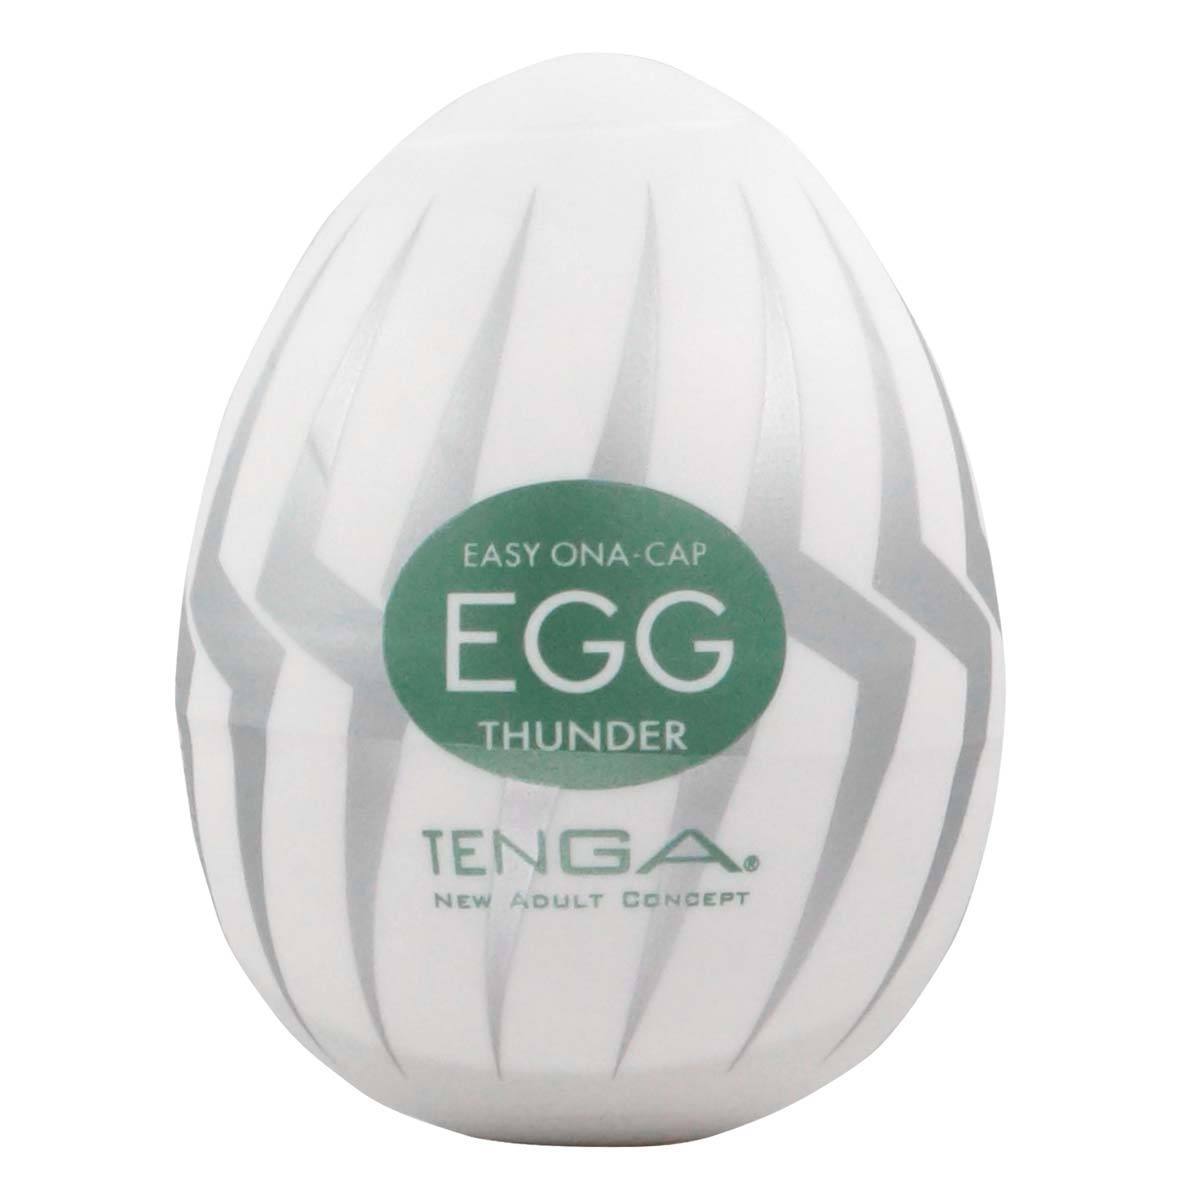 TENGA Egg Thunder 雷電飛機蛋 飛機蛋 購買